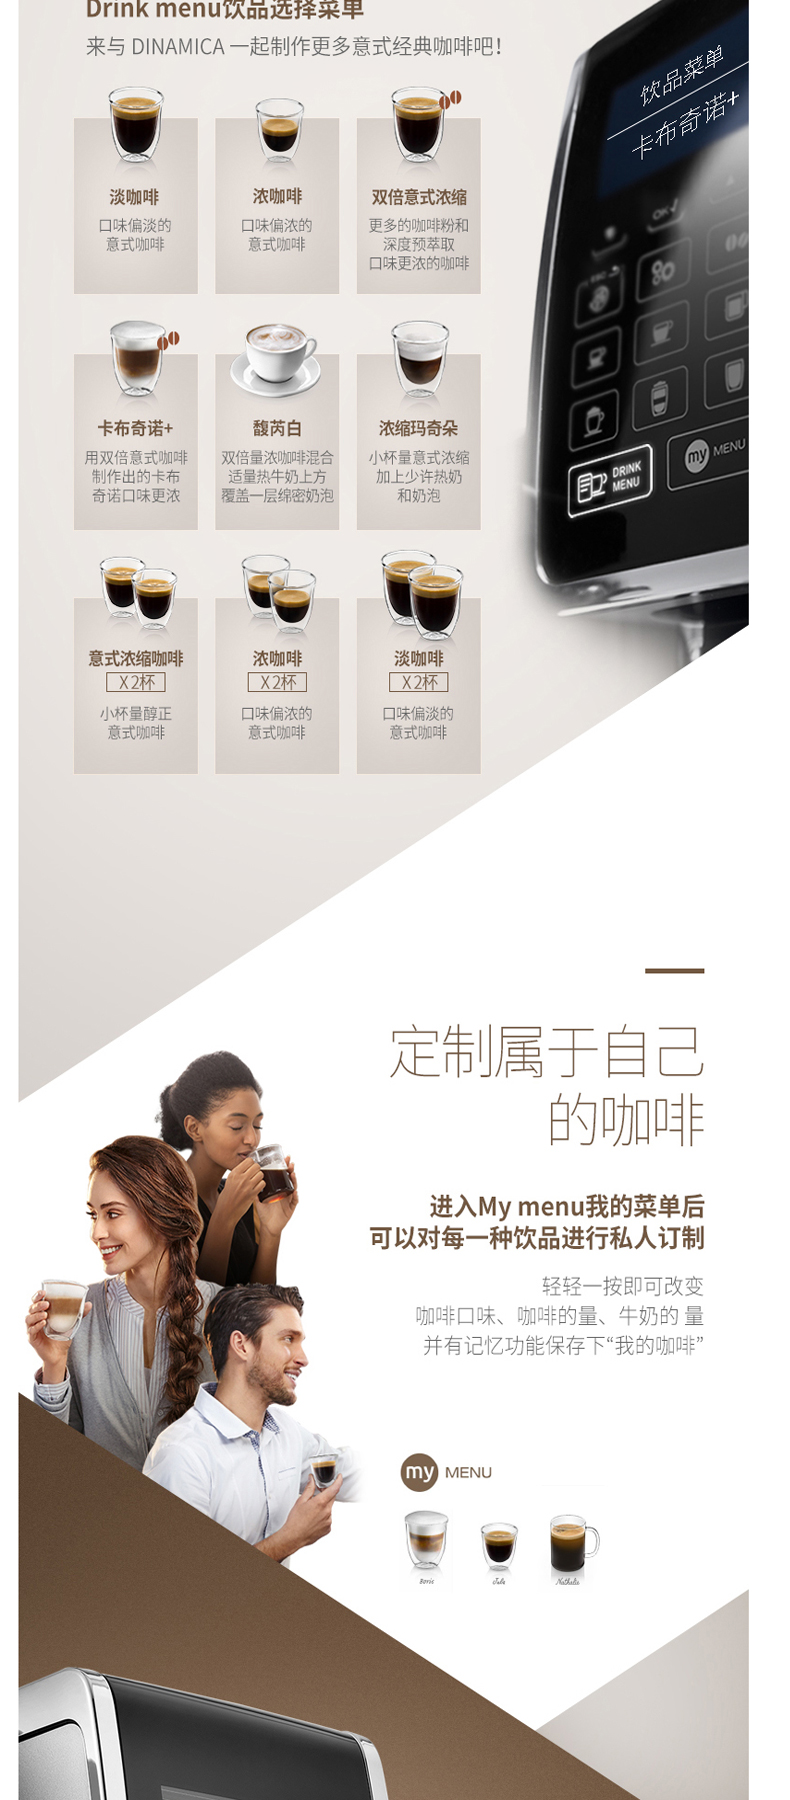 德龙 DeLonghi 全自动咖啡机 ECAM 350.75 